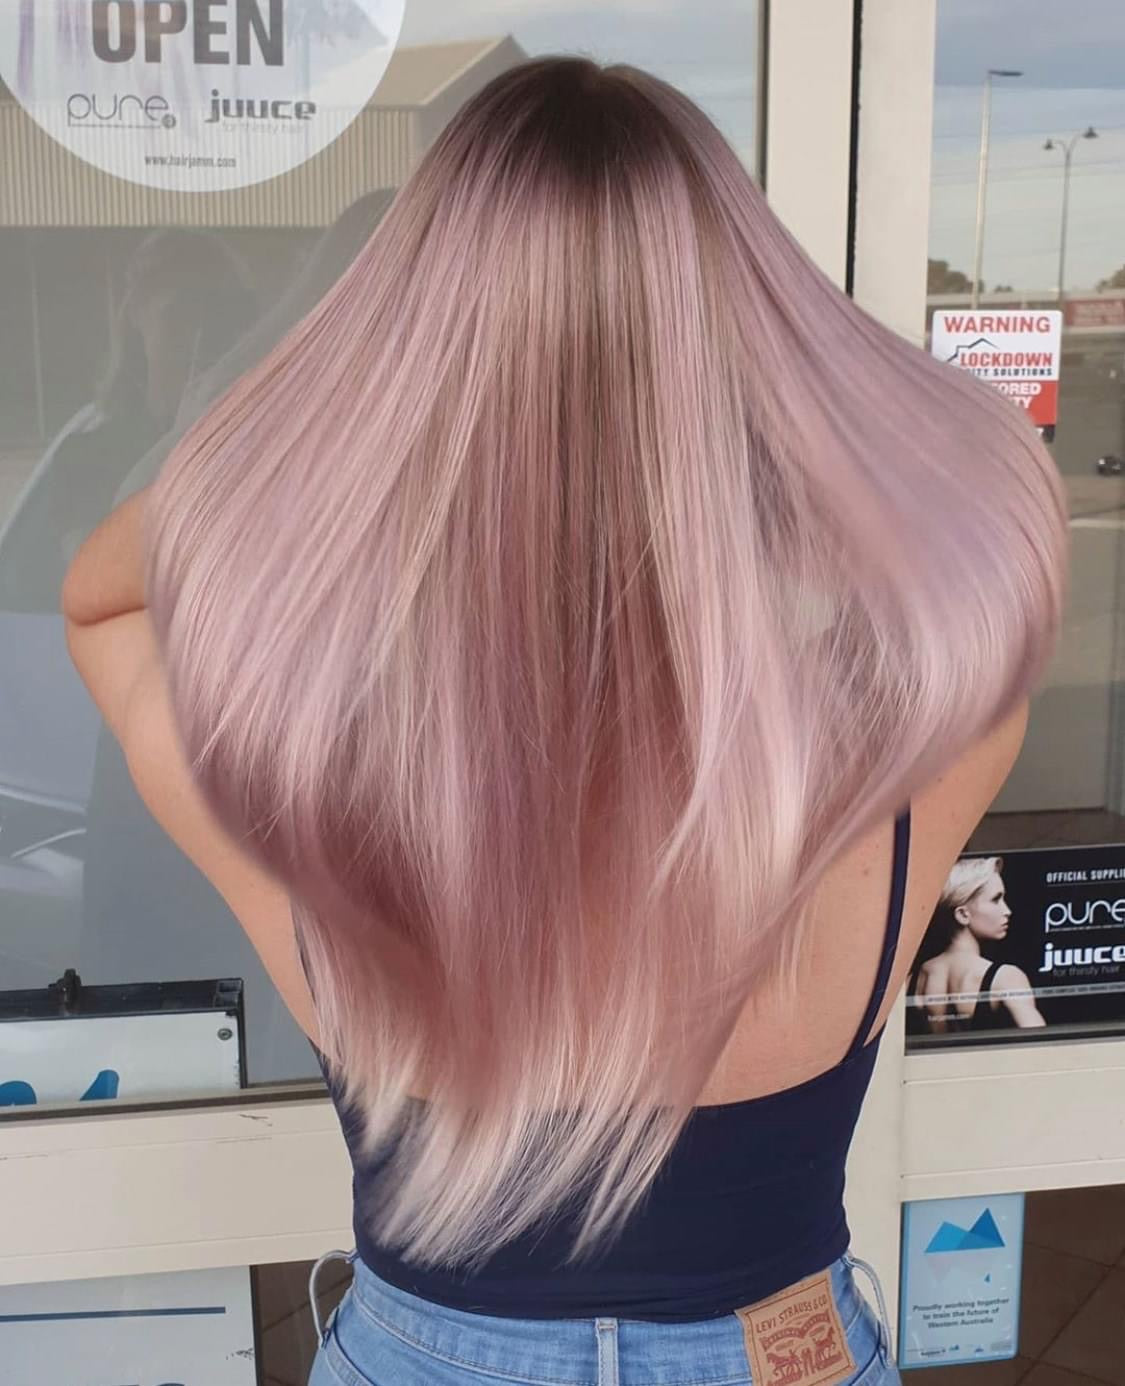 MUVO Ultra Rose Shampoo is een vegan shampoo die je blonde, gekleurde en geblondeerde haar een roze kleur geeft